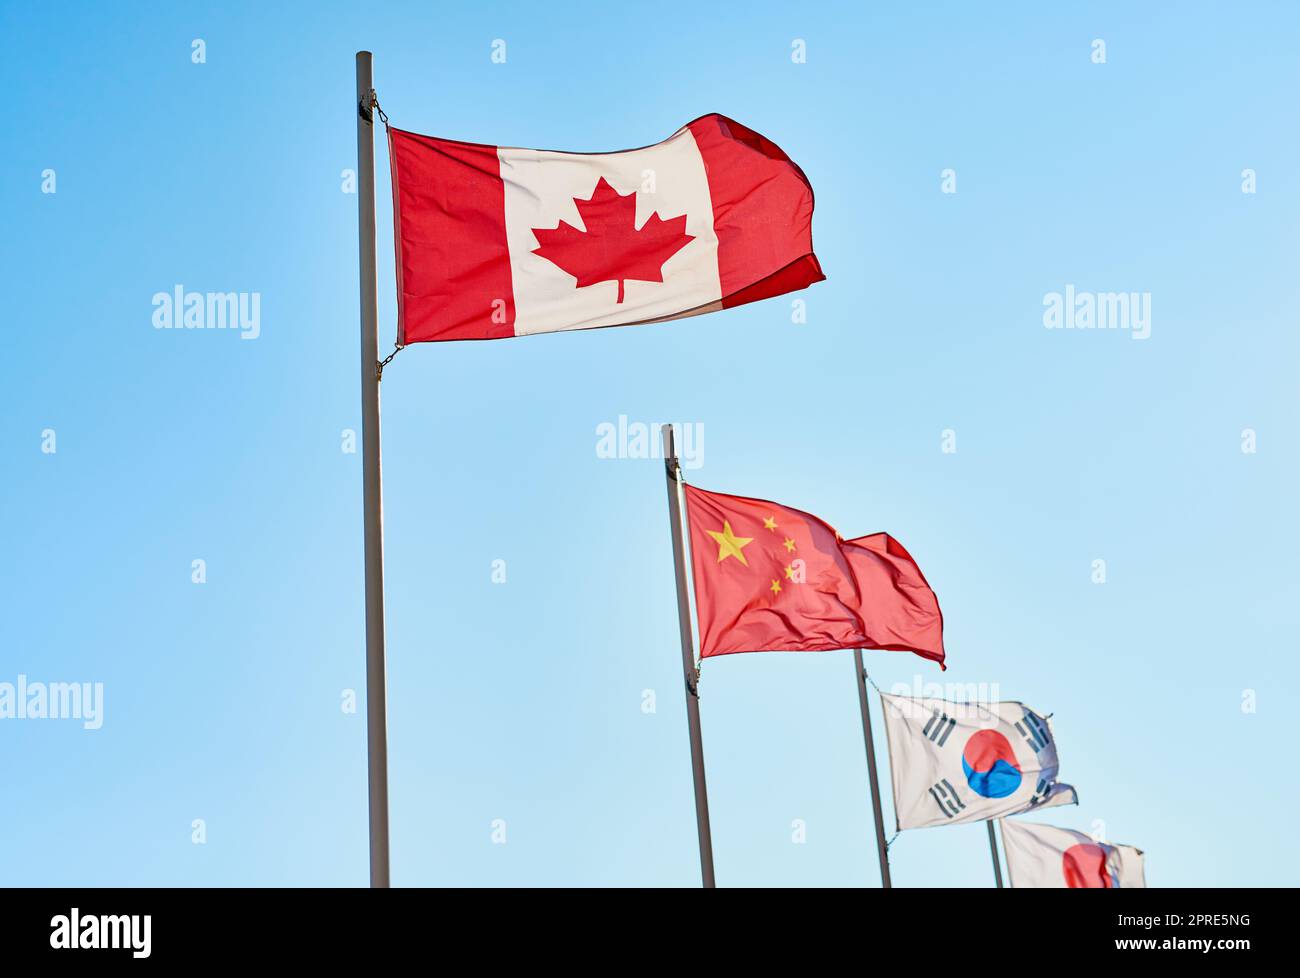 Mi piacerebbe visitare questi paesi: Durante il giorno all'esterno si trovano diversi tipi di bandiere dei countrys. Foto Stock